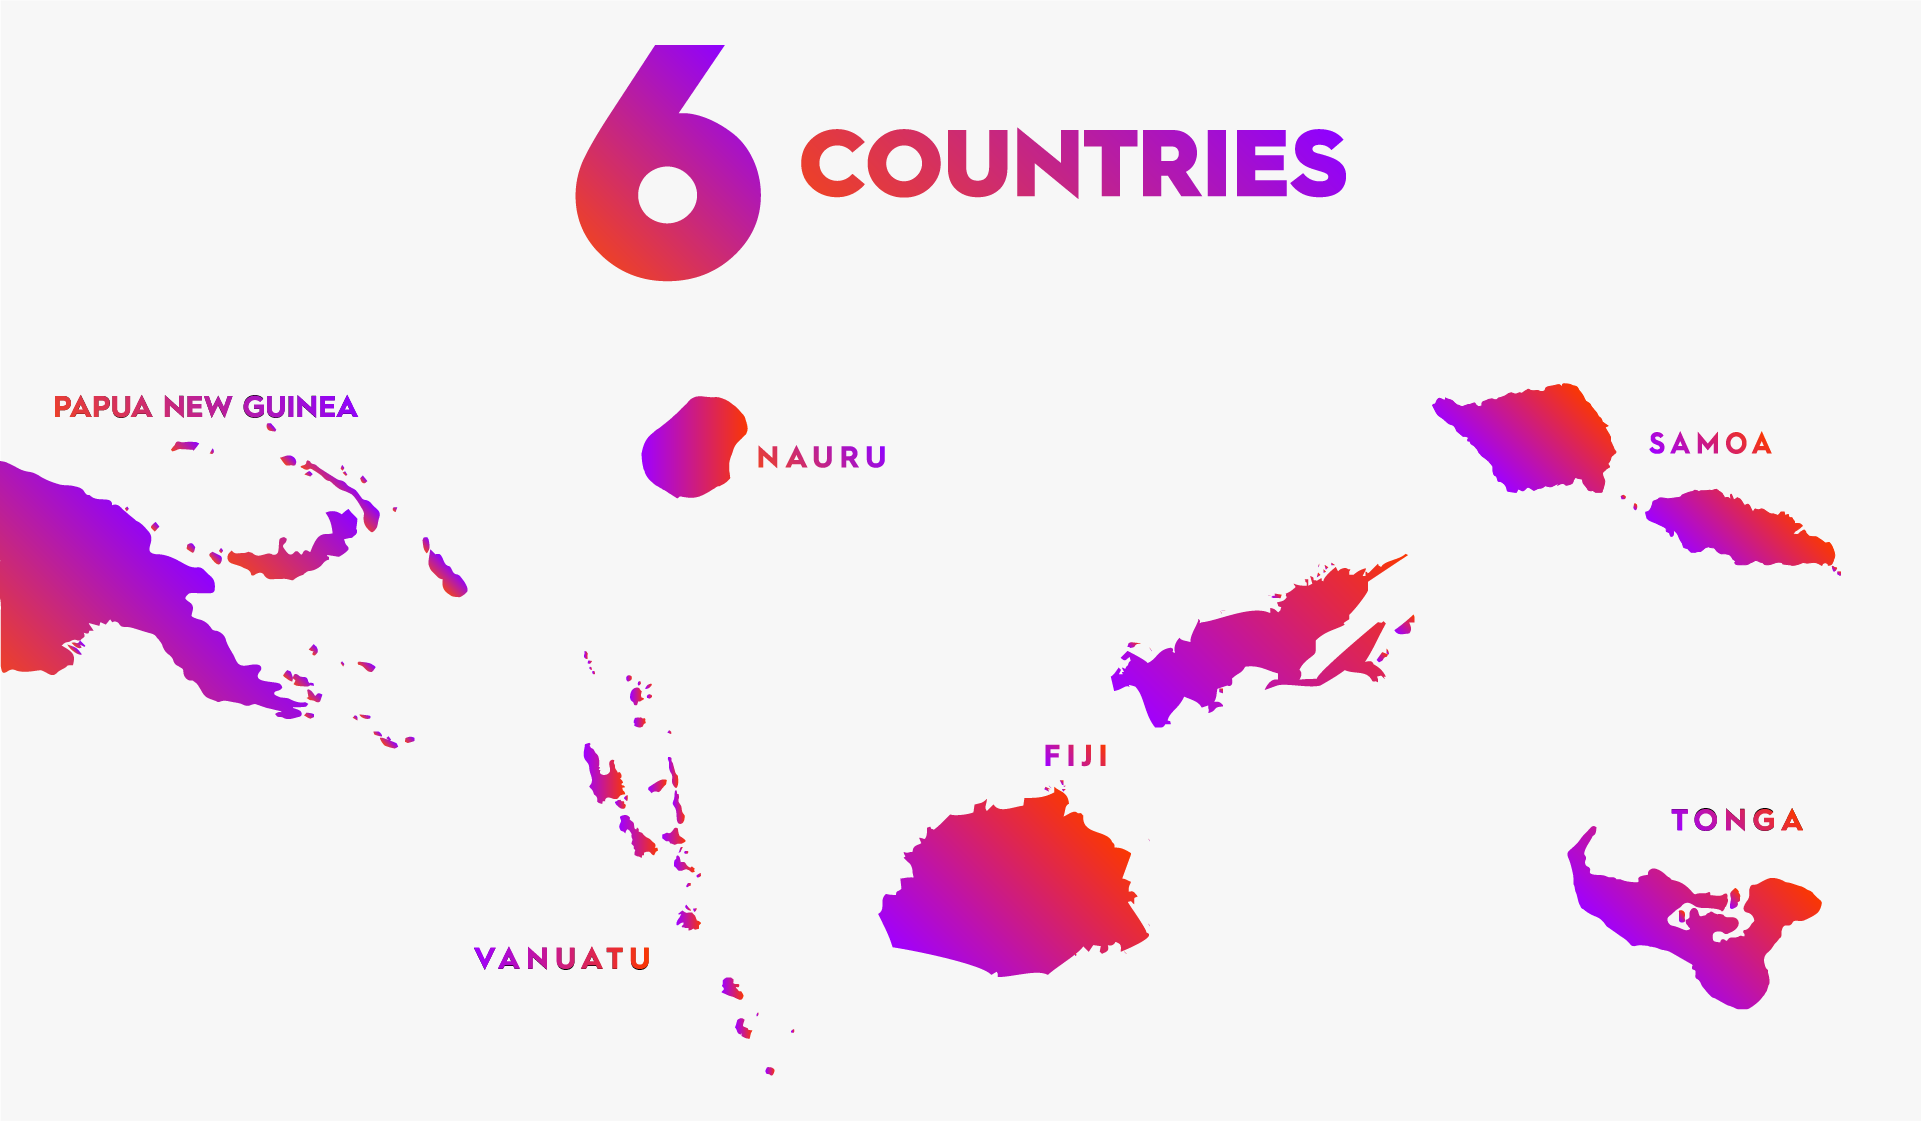 Digicel operates in 6 countries - Papua New Guinea, Vanuatu, Nauru, Fiji, Samoa and Tonga